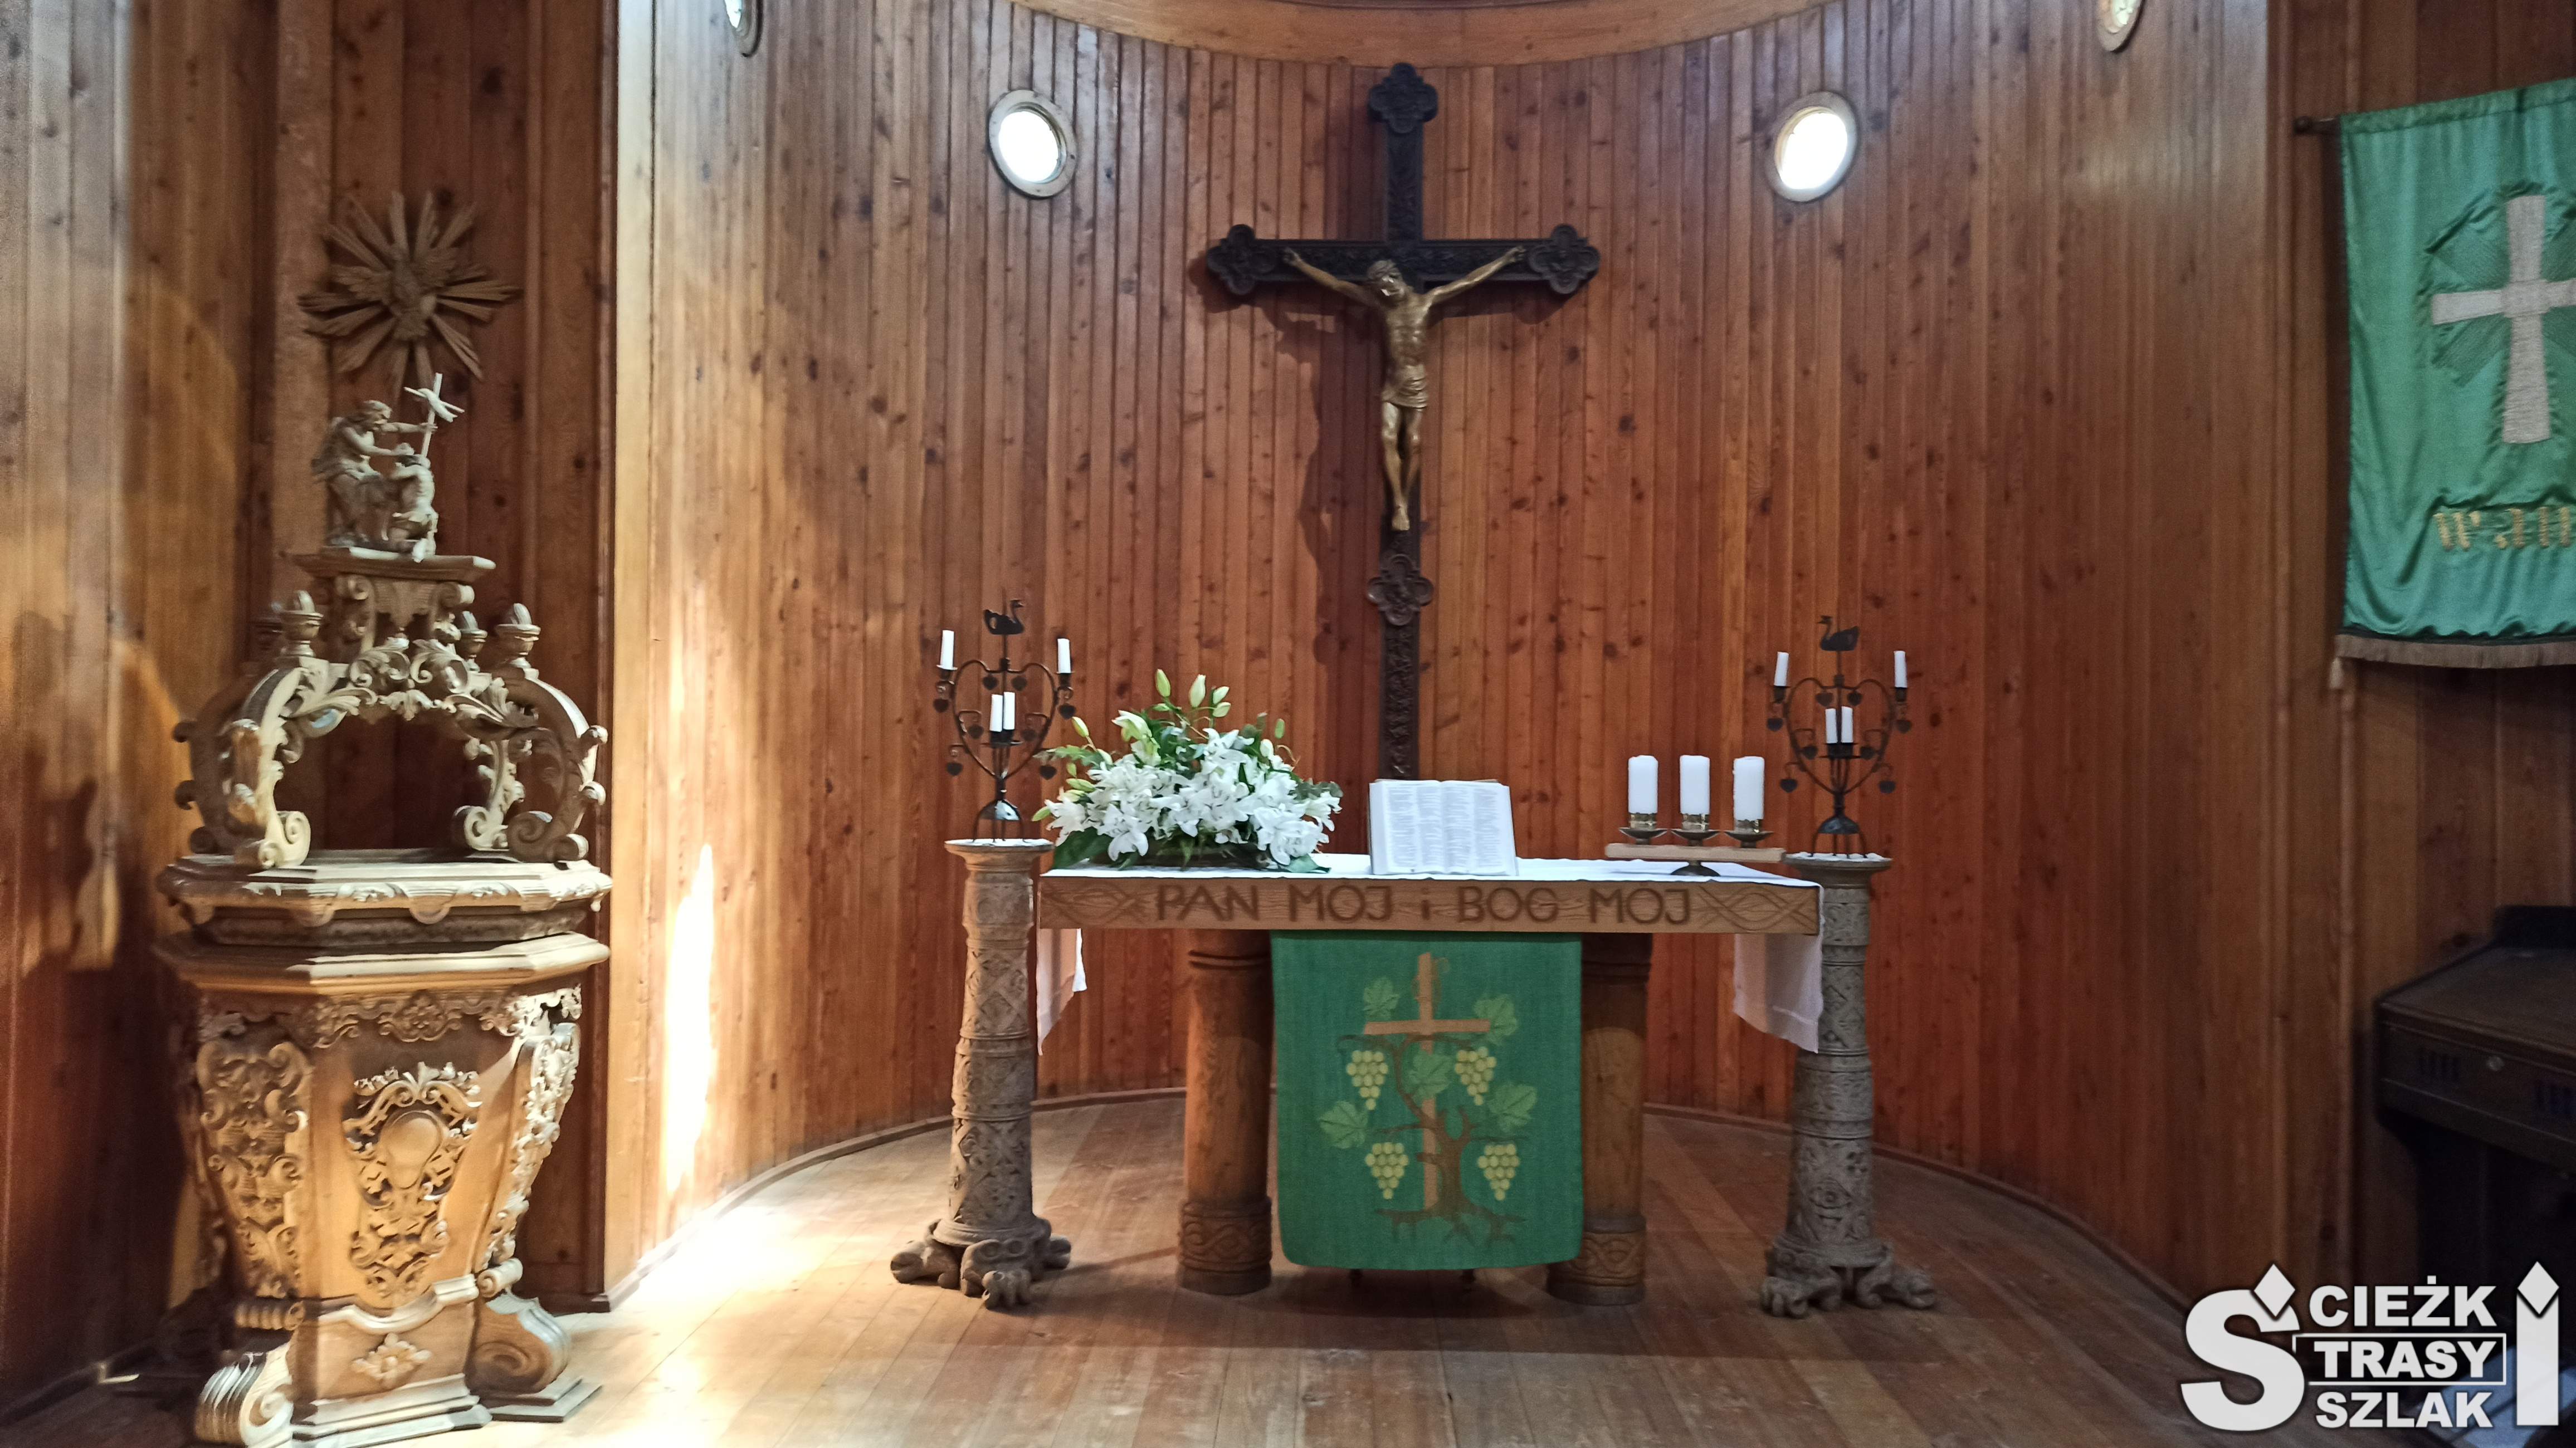 Dwa świeczniki z symboliką szczęśliwych małżeństwa na ołtarzu z krzyżem Jakuba z Janowic przy chrzcielnicy